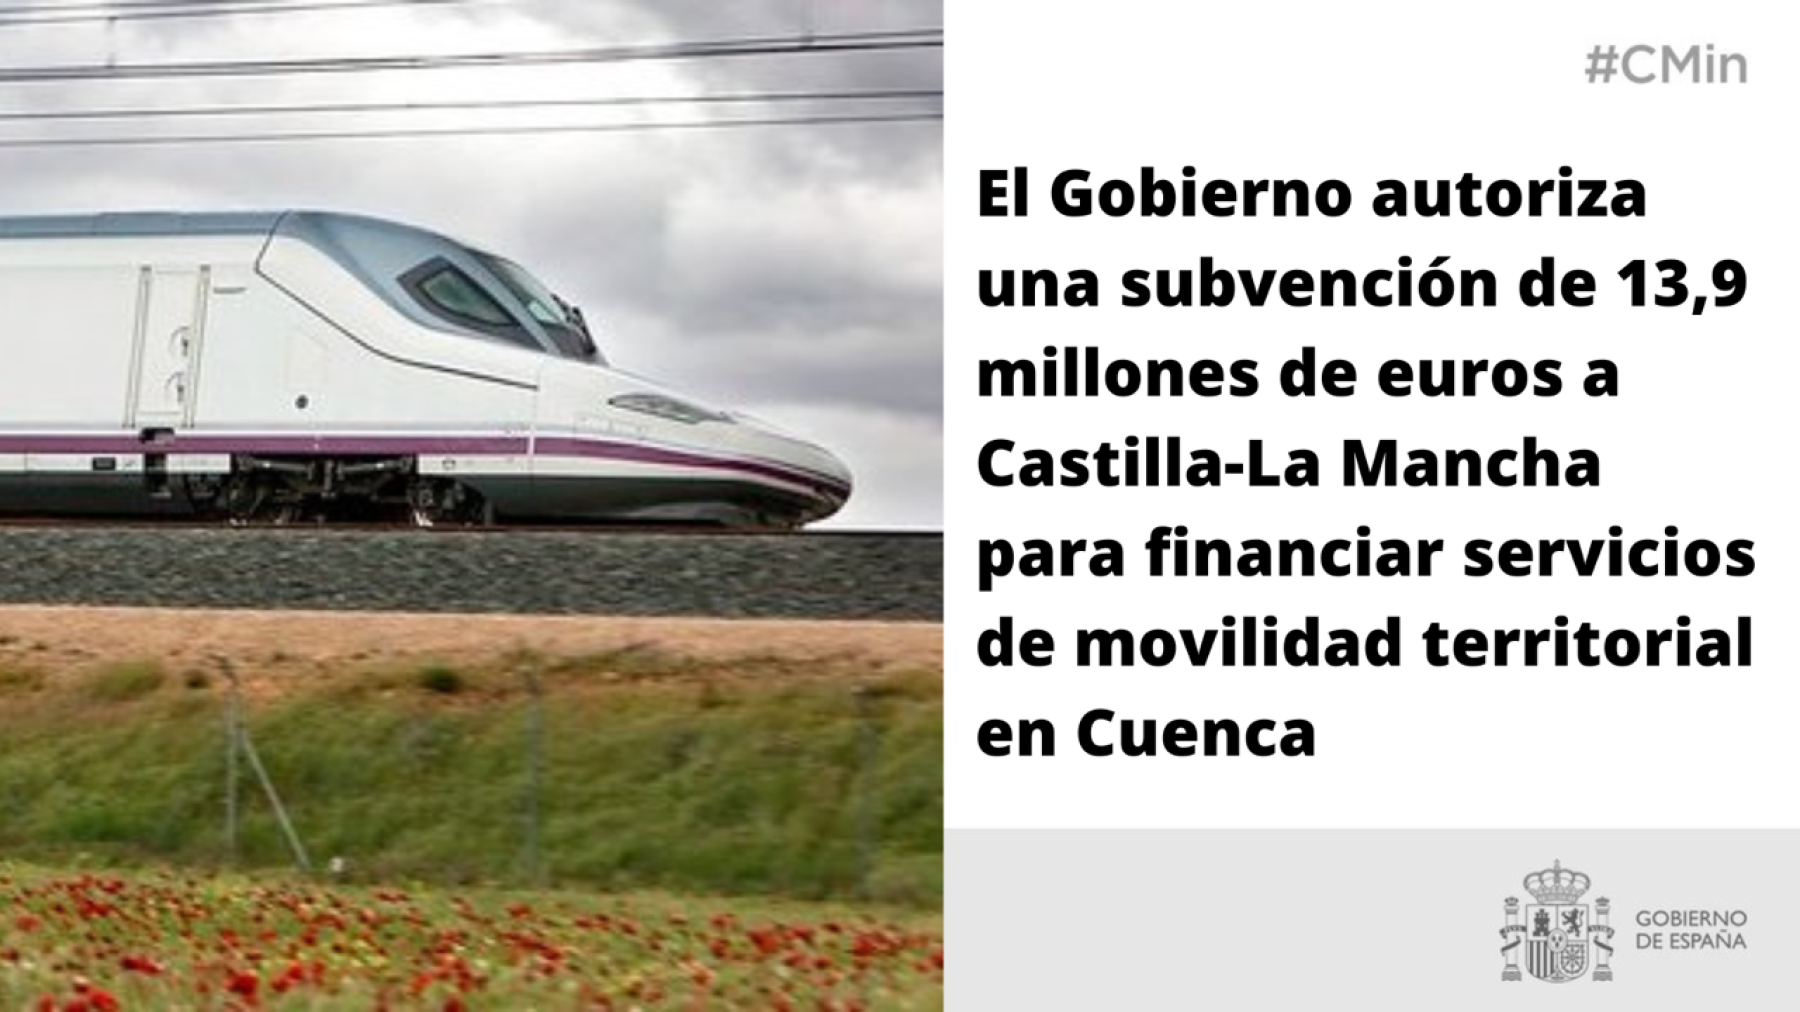 El Gobierno autoriza una subvención de 13,9 millones de euros a Castilla-La Mancha para financiar servicios de movilidad territorial en Cuenca